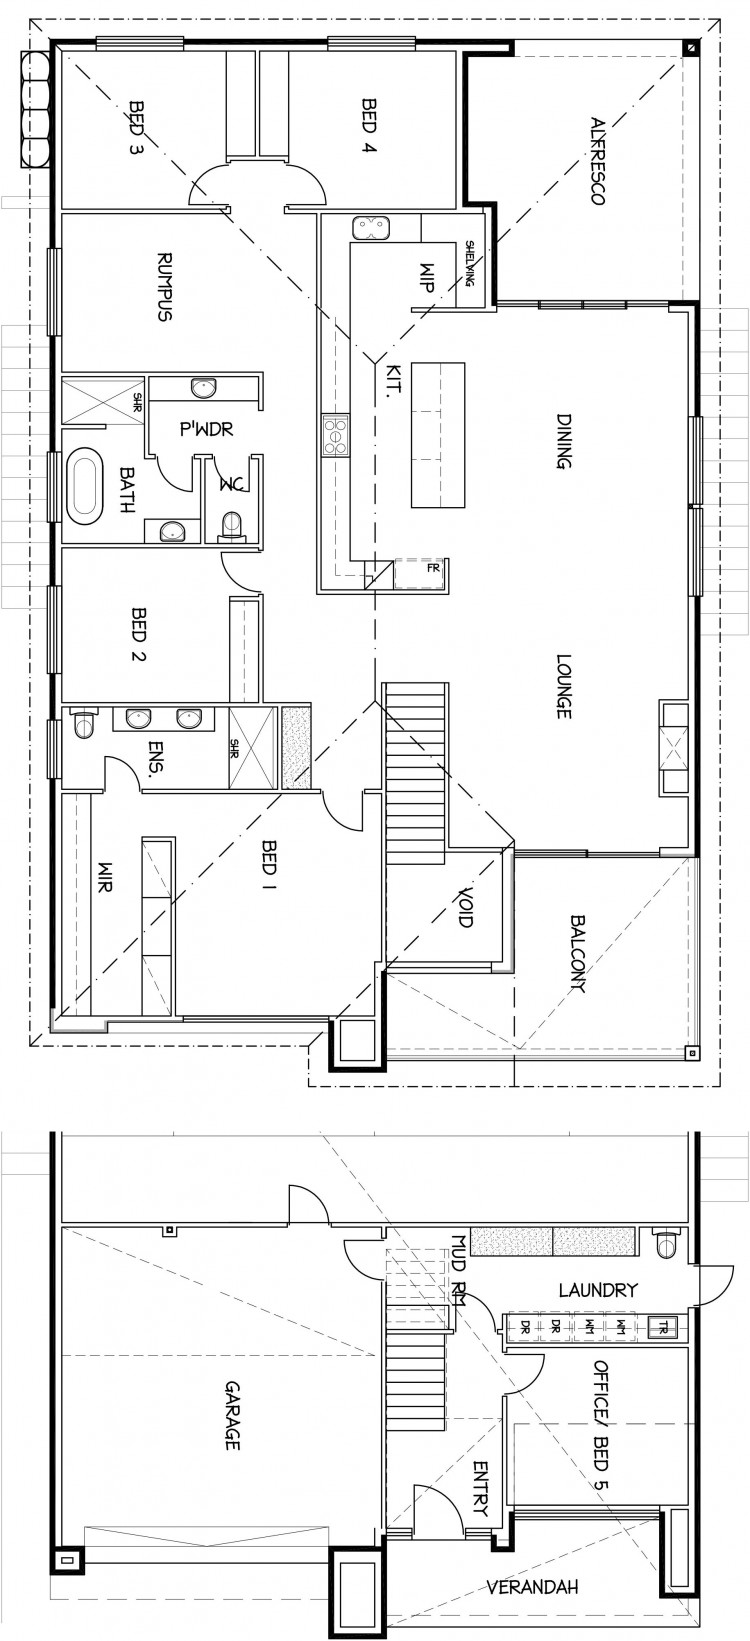 Full Floor Plan